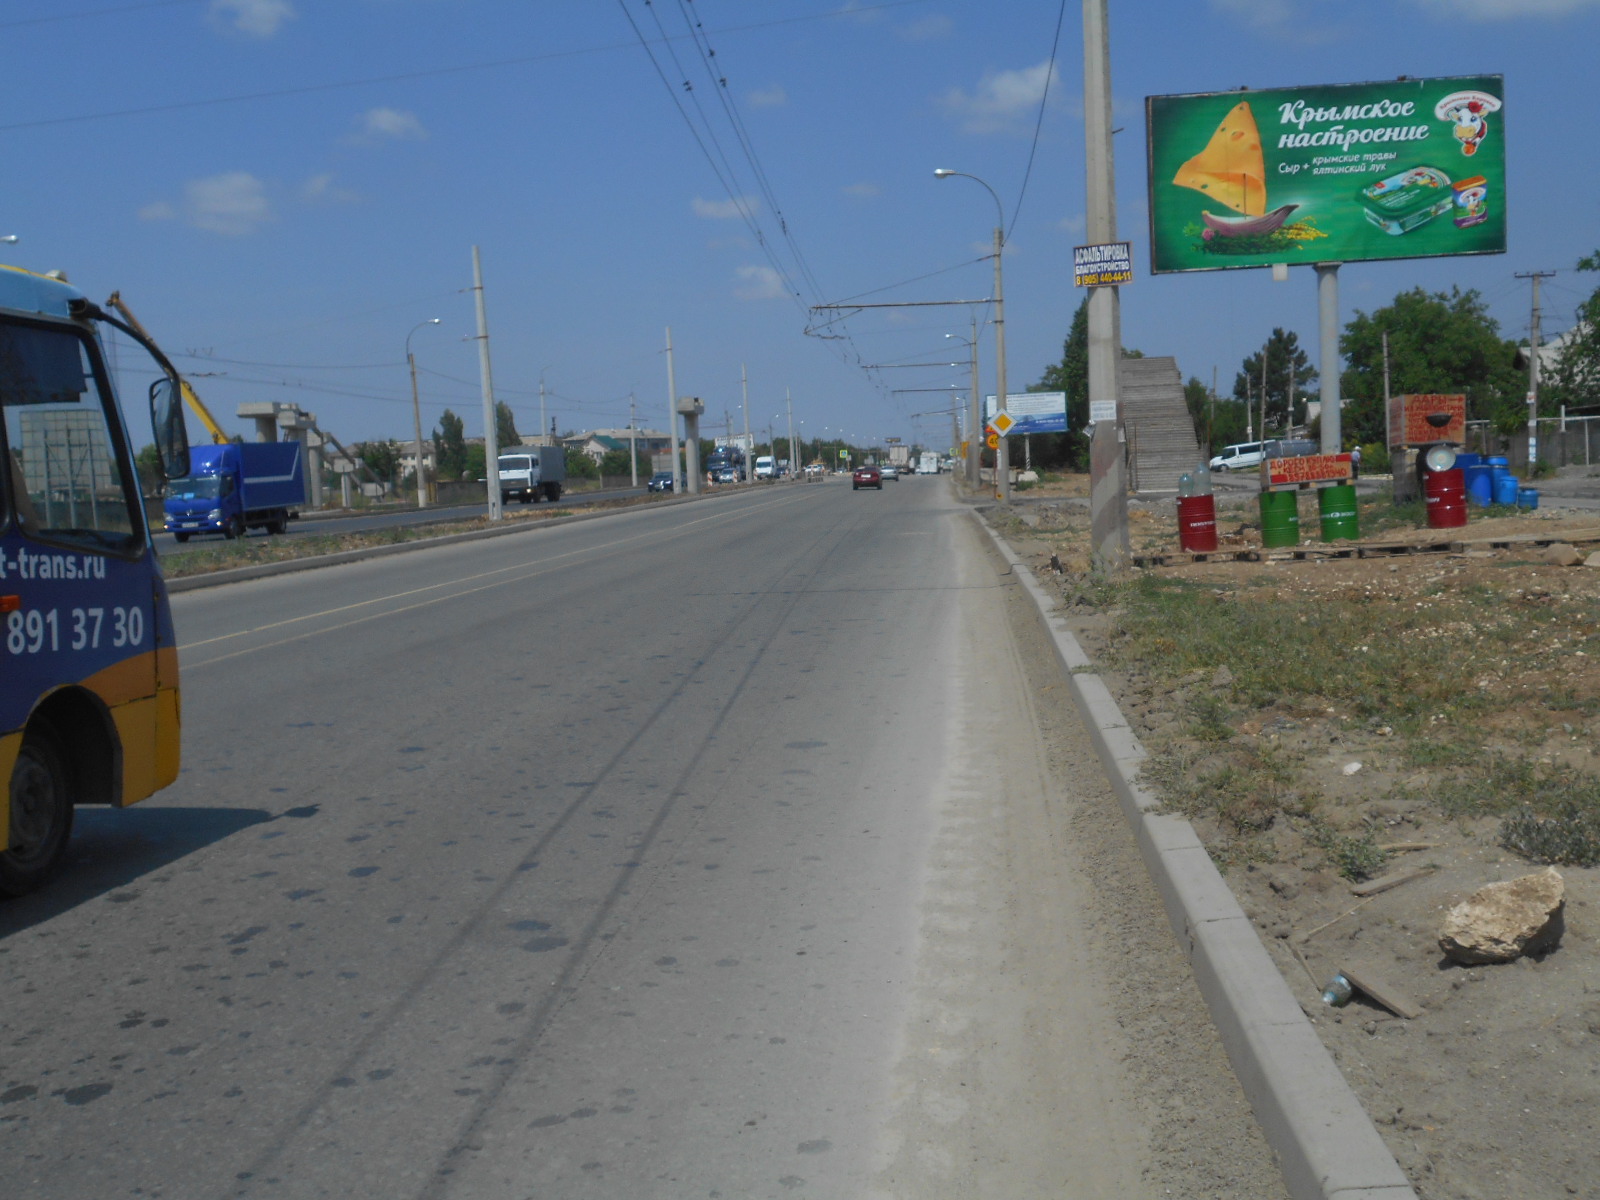 Евпаторийское шоссе д.68, Район Богдановки, р-н Метро , строит. Рыночек